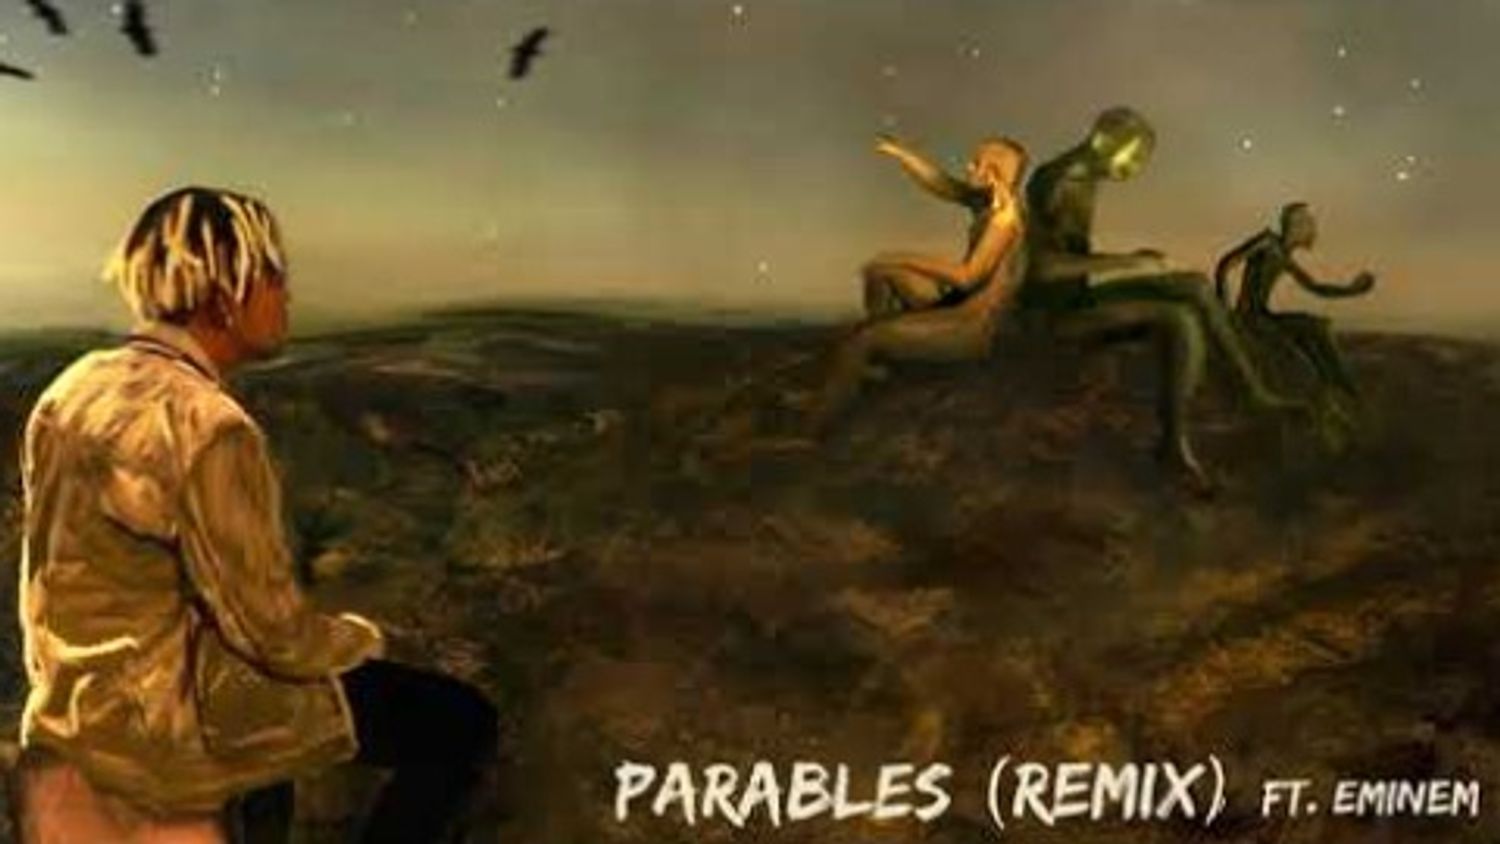 Cordae - Parables Remix (feat. Eminem) 